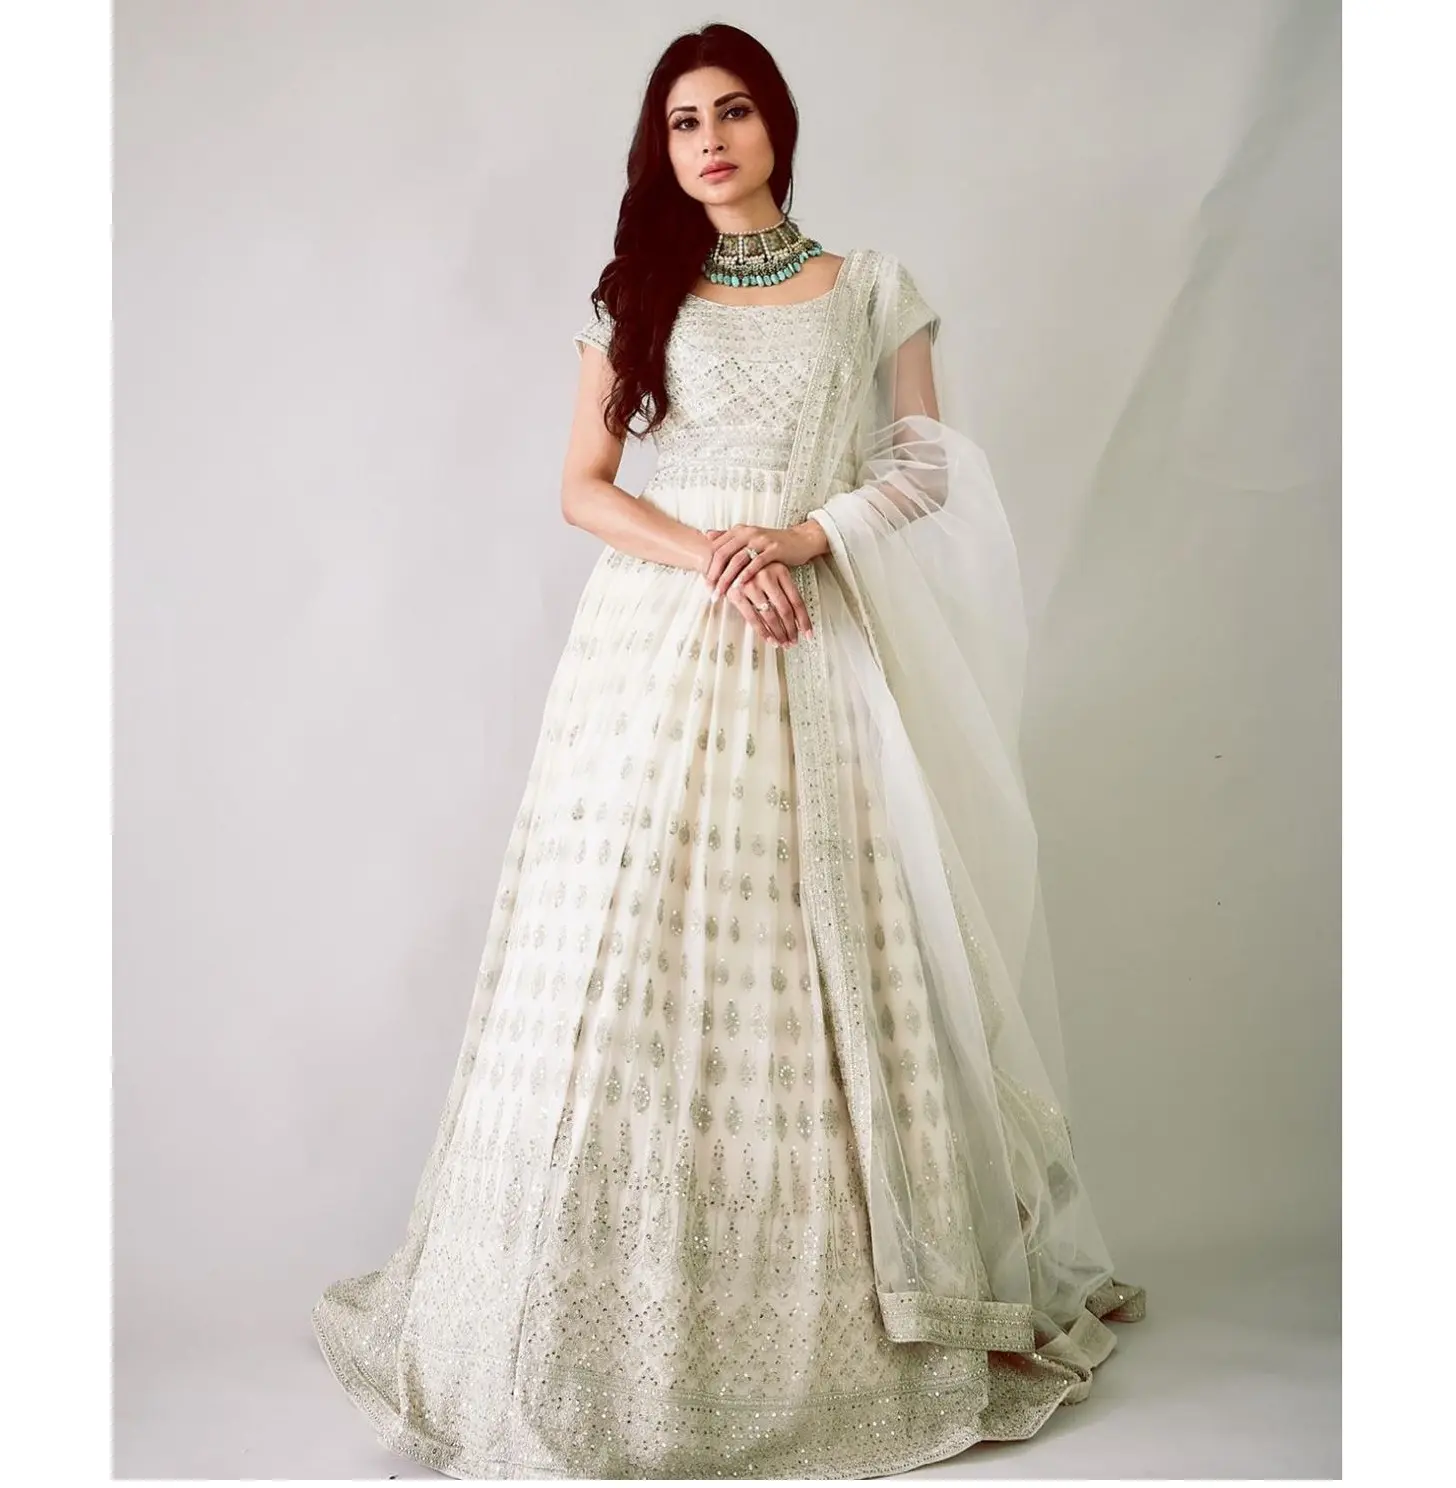 Roupa feminina bordada estilo anarkali, vestuário indiano e paquistanês, para casamento